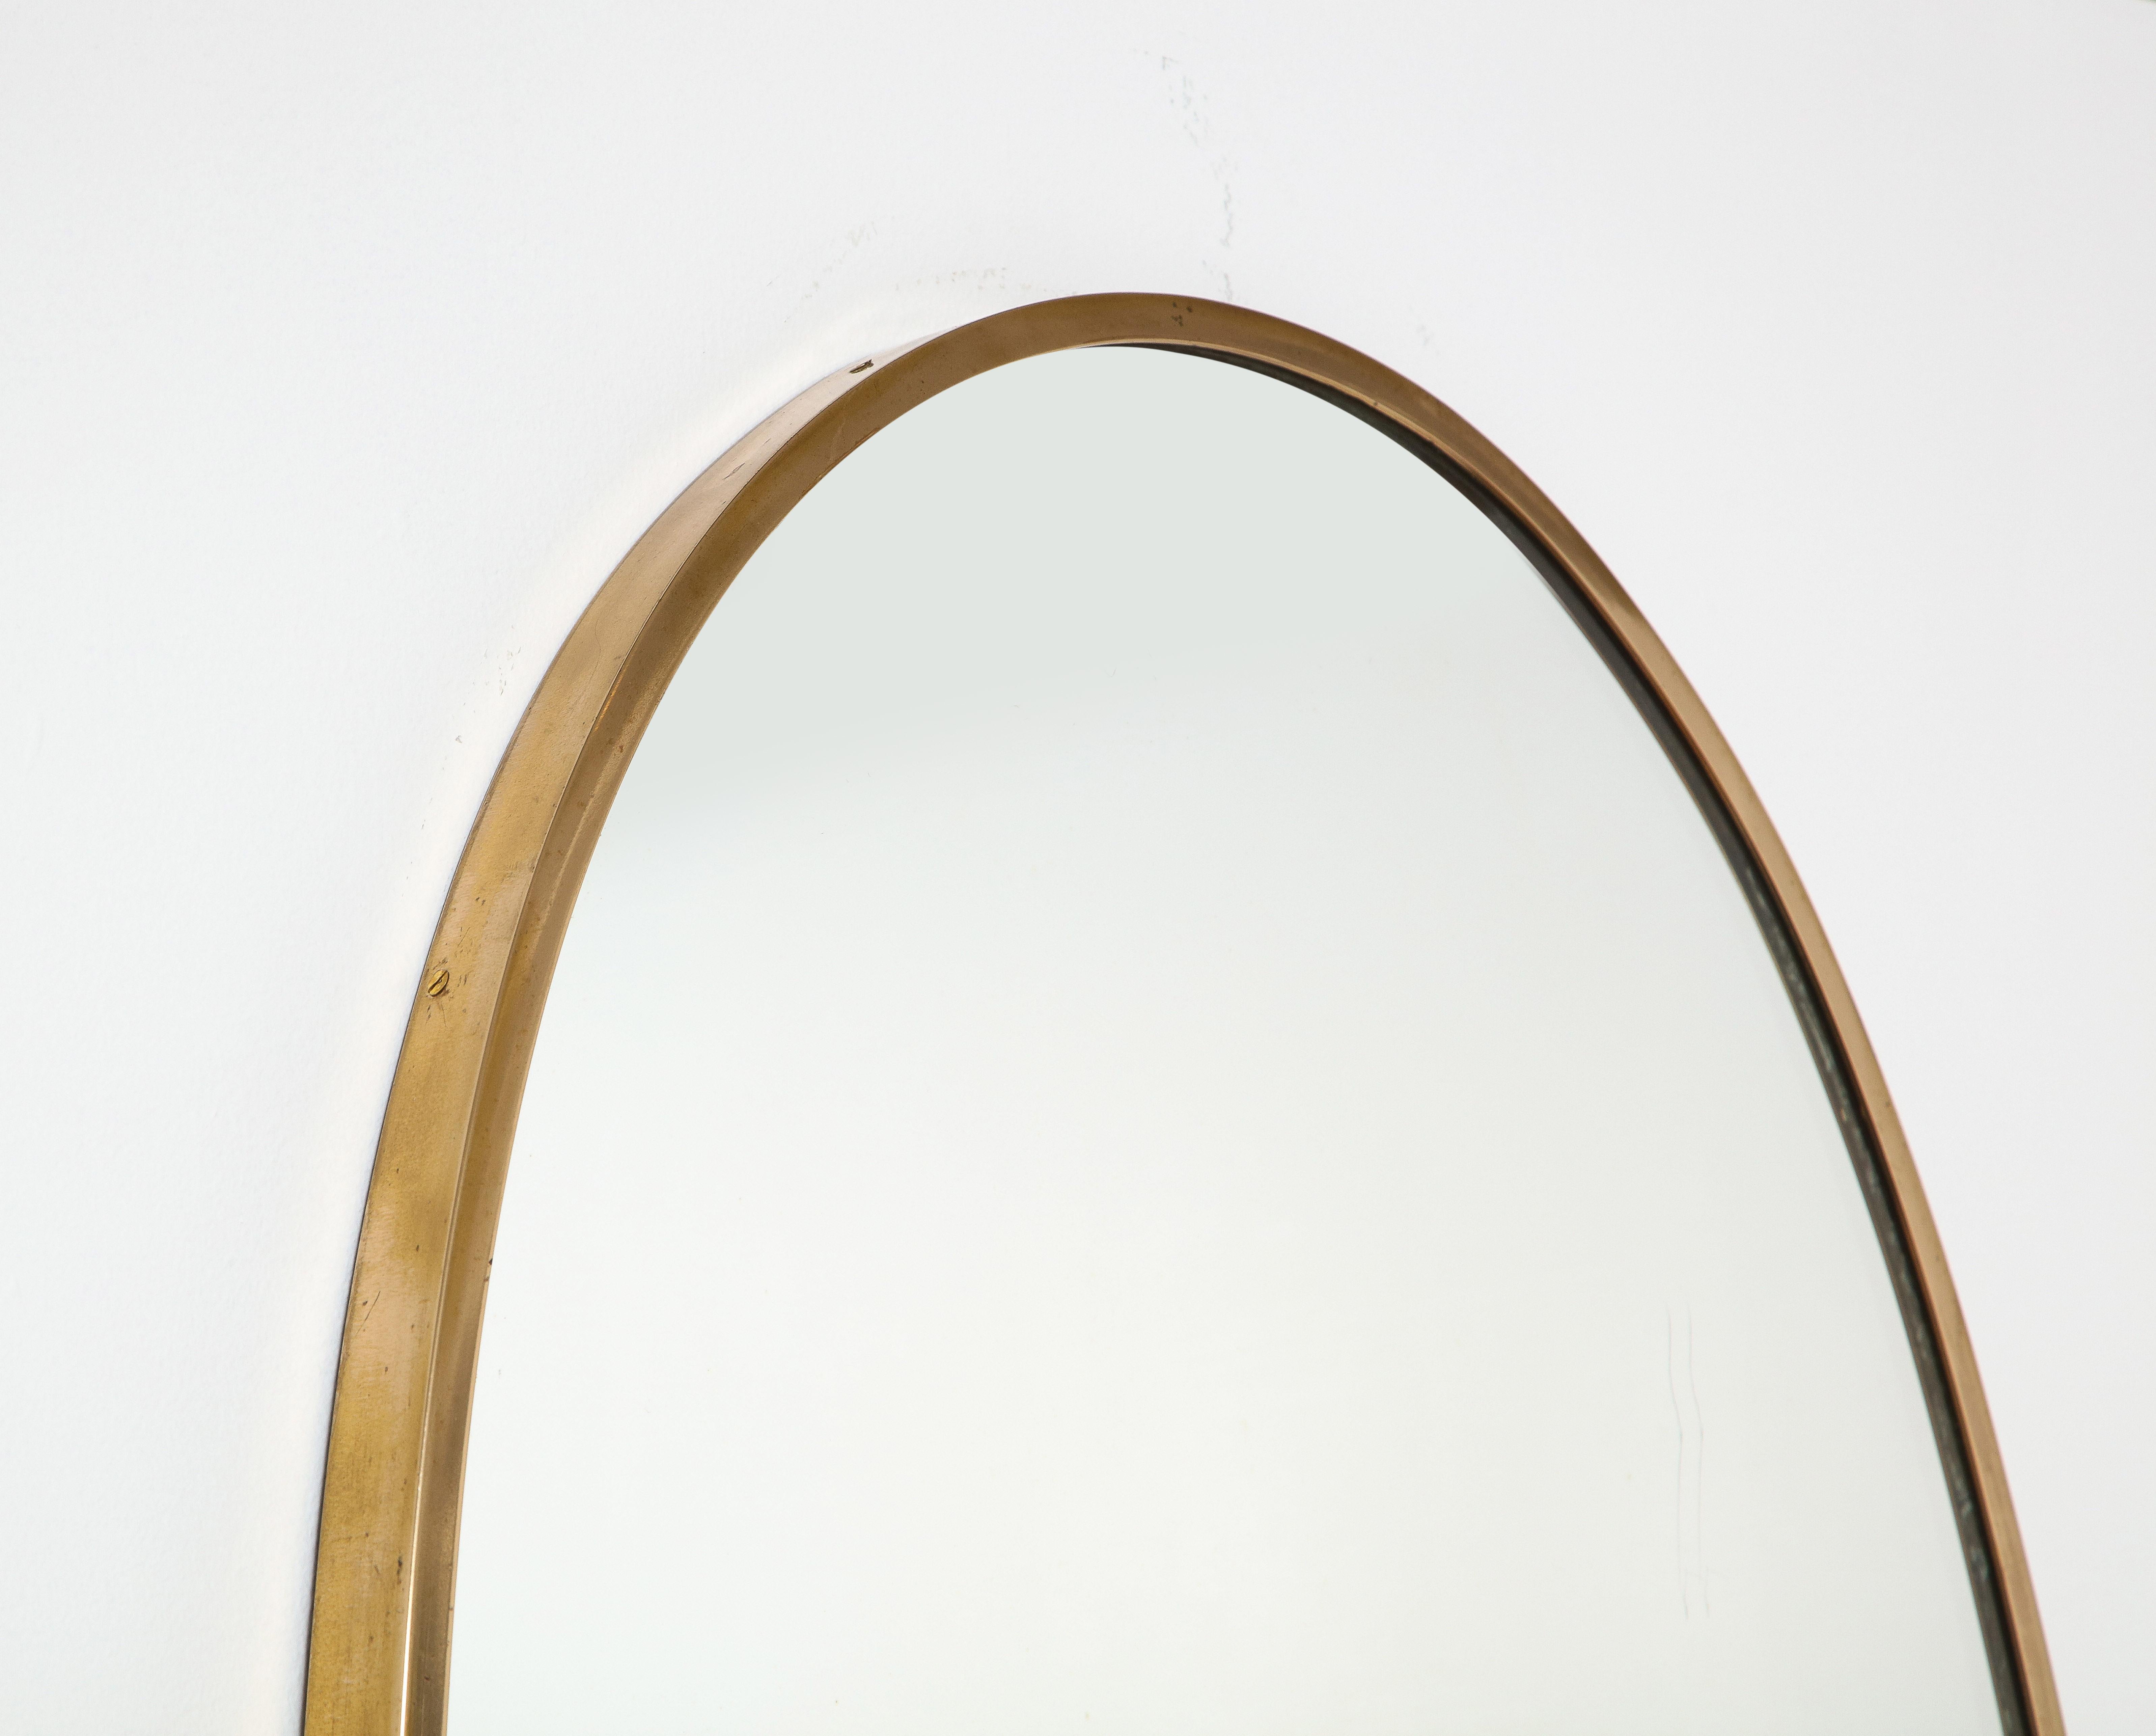 Mid-20th Century Italian Modernist Brass Framed Mirror, 1950-60